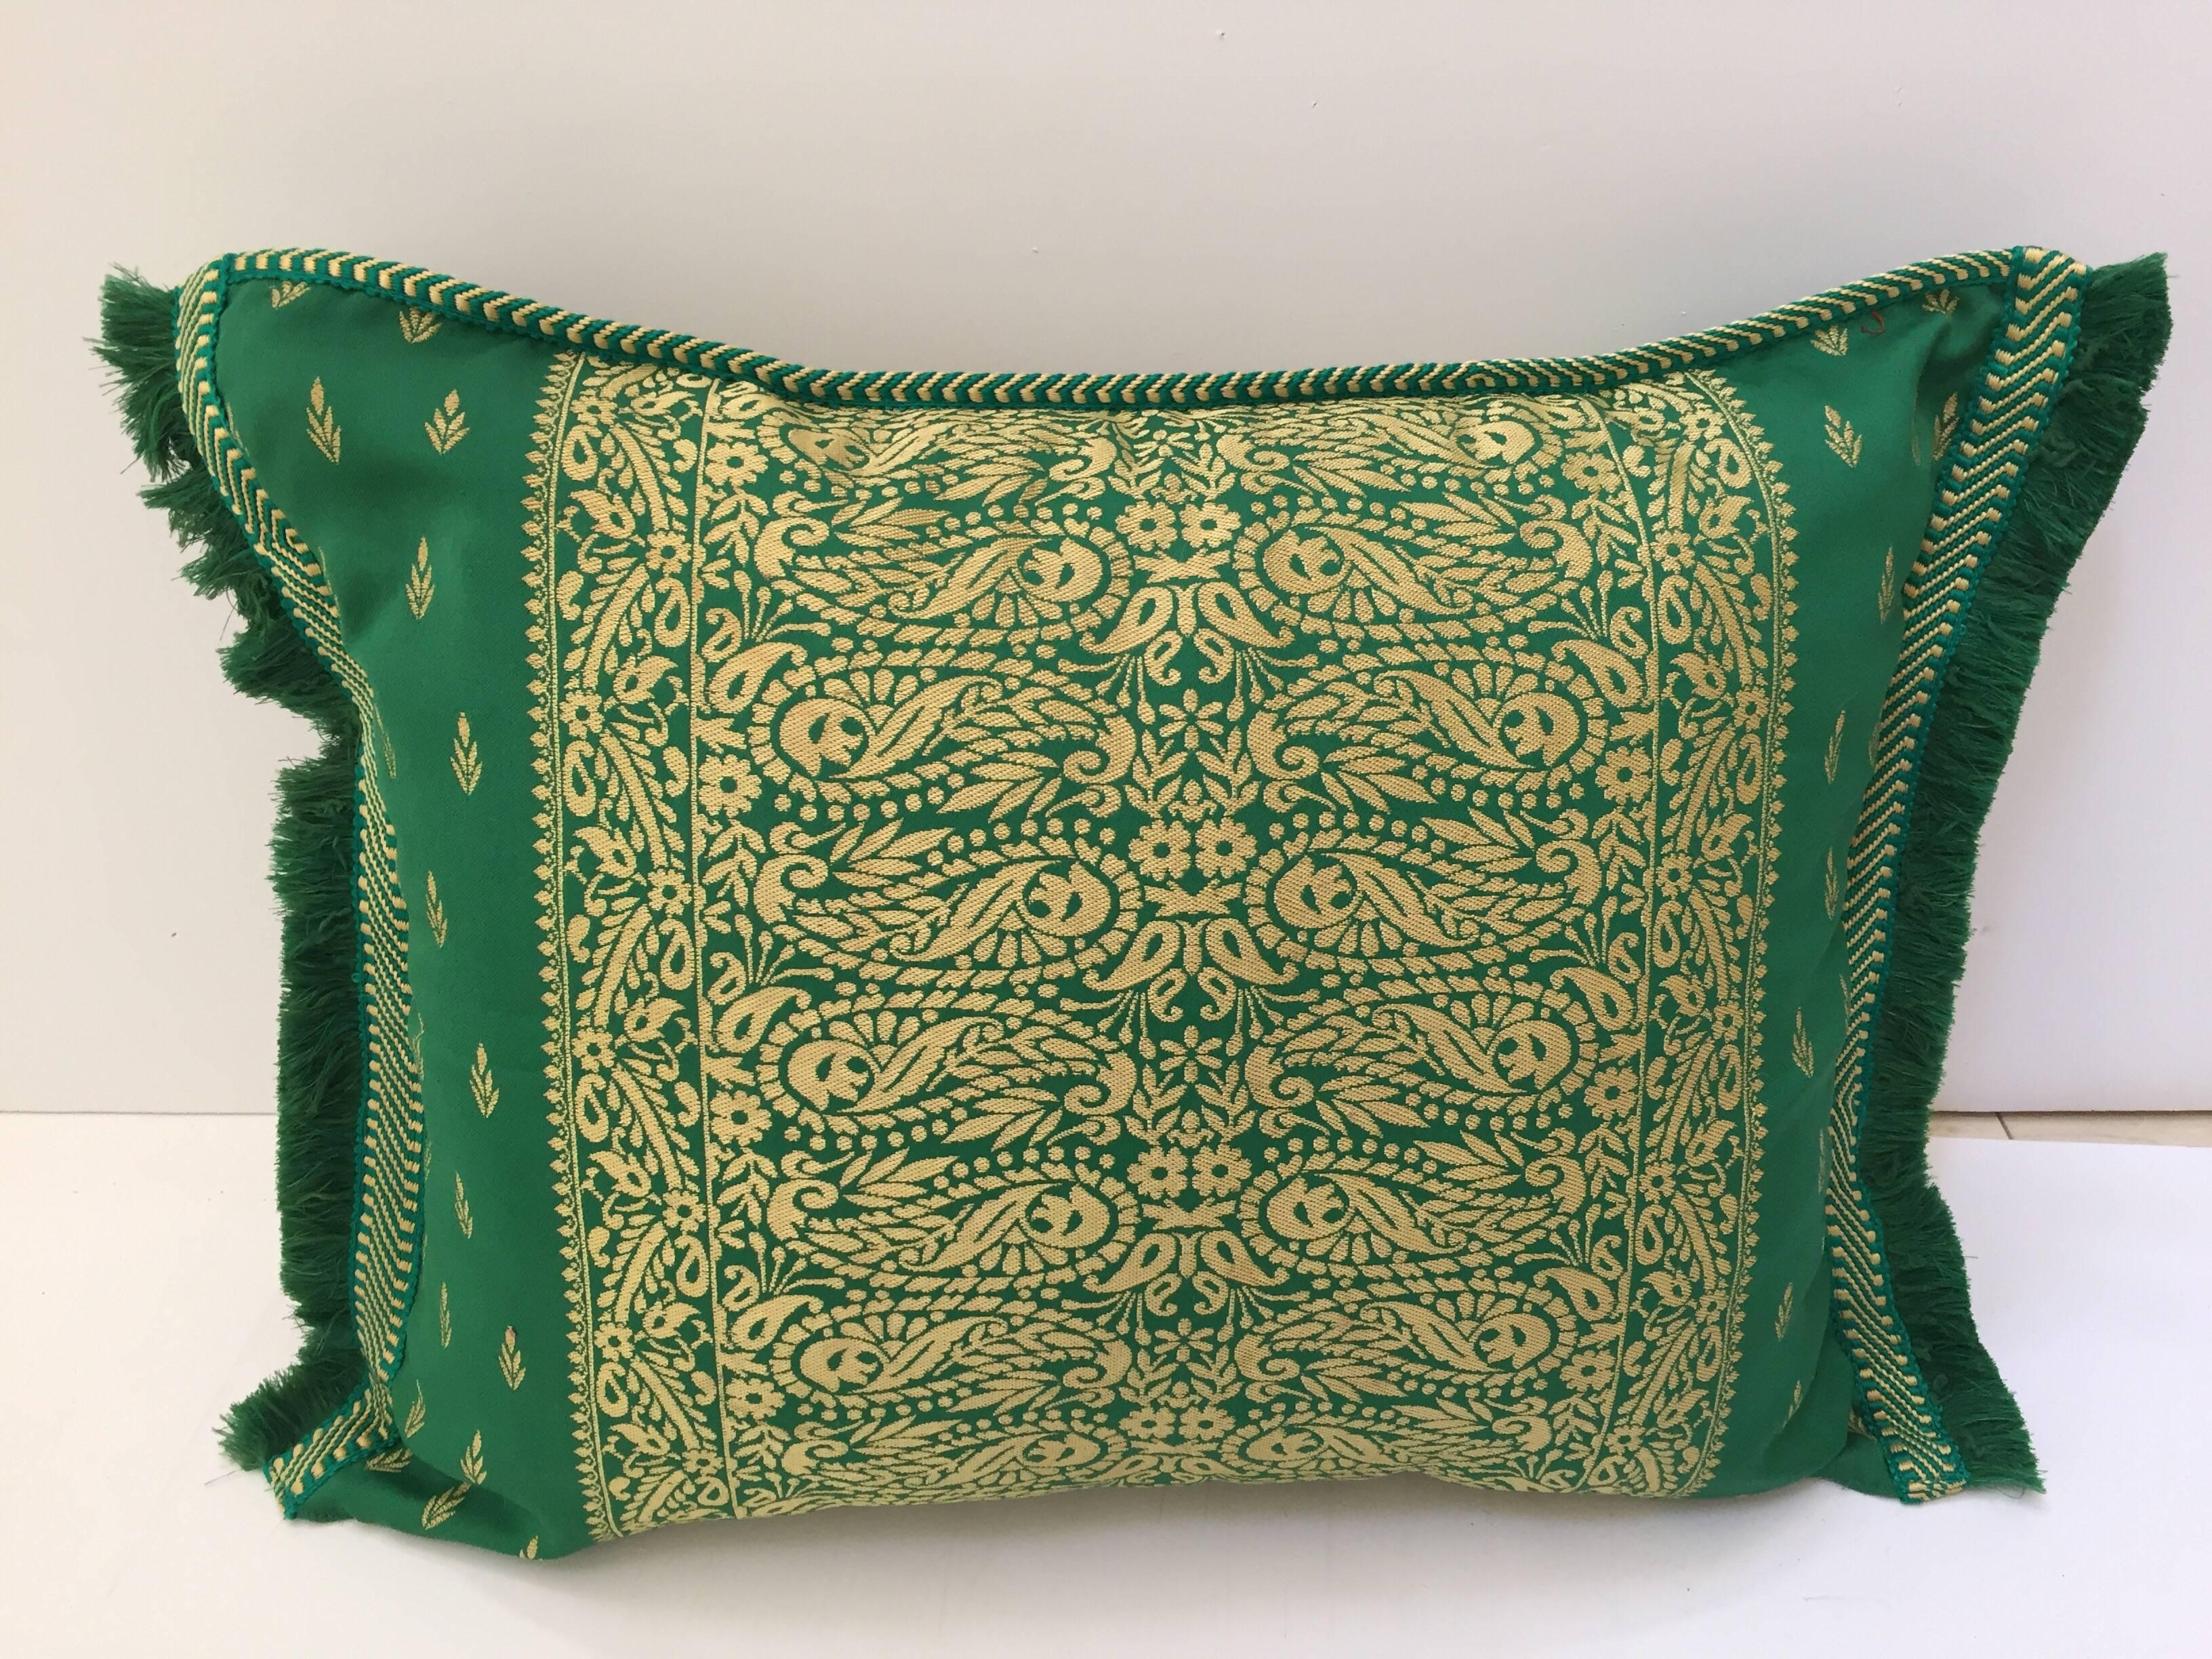 Großes Paar marokkanische Damast grün floral Nackenrolle Lendenwirbel dekorative Kissen.
Hervorragend geeignet als Akzentkissen auf einem Bett oder Sofakissen.
Das Kissen hat ein schönes Medaillon in der Mitte, detaillierte Ecken und Fransen an den